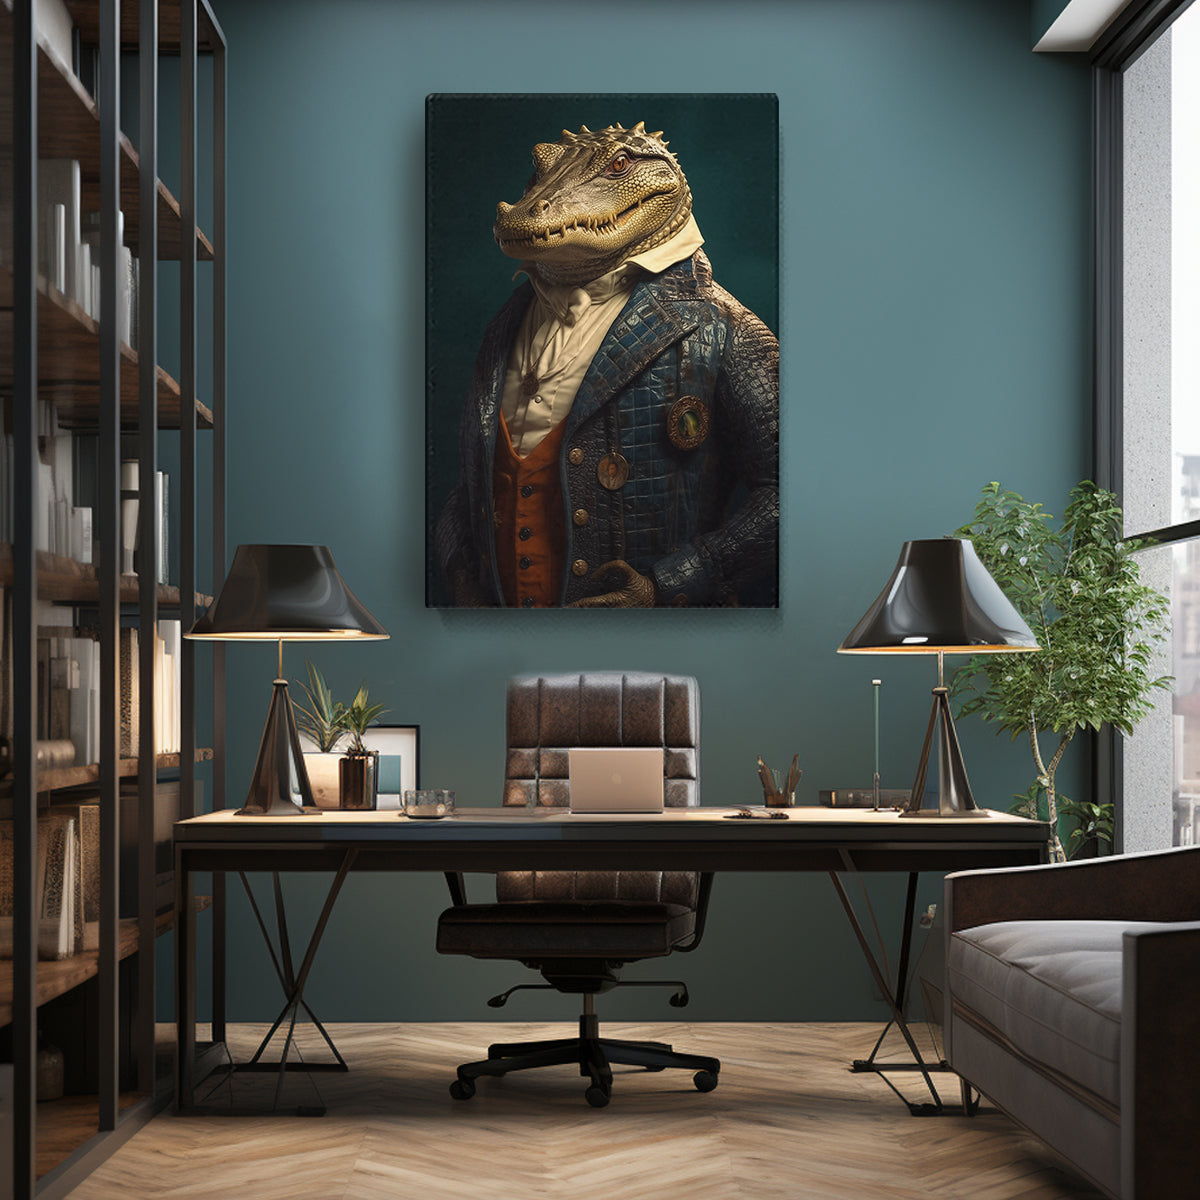 Regal Crocodile in Vintage Attire Canvas Print ArtLexy   